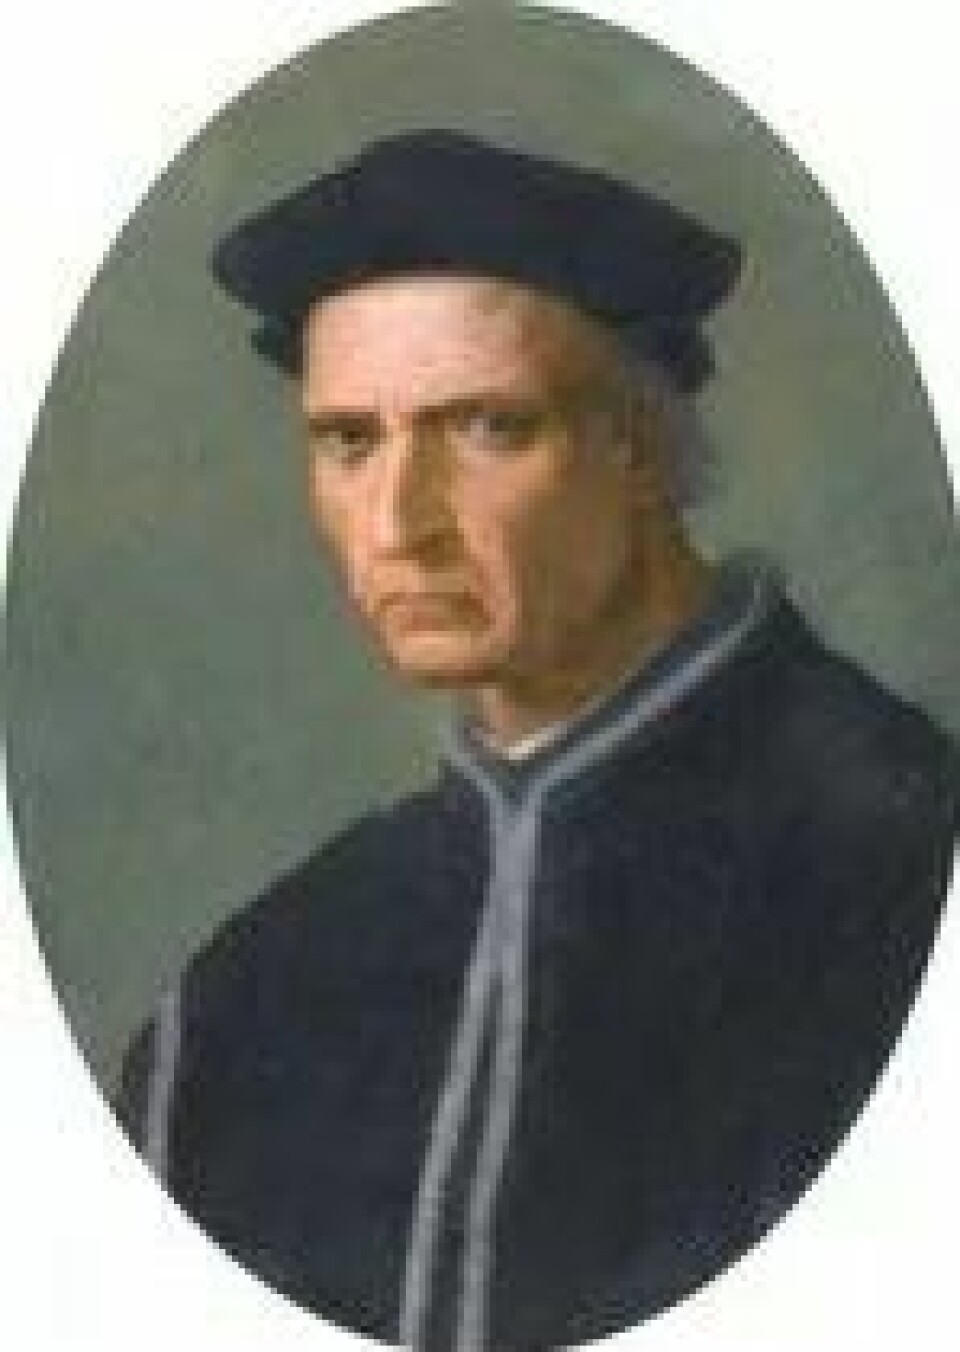 Machiavelli tjente som andrekansler under Piero Soderini (1450-1522), her malt av Ridolfo del Ghirlandaio. (Kilde: Wikimedia Commons/Sotheby’s)